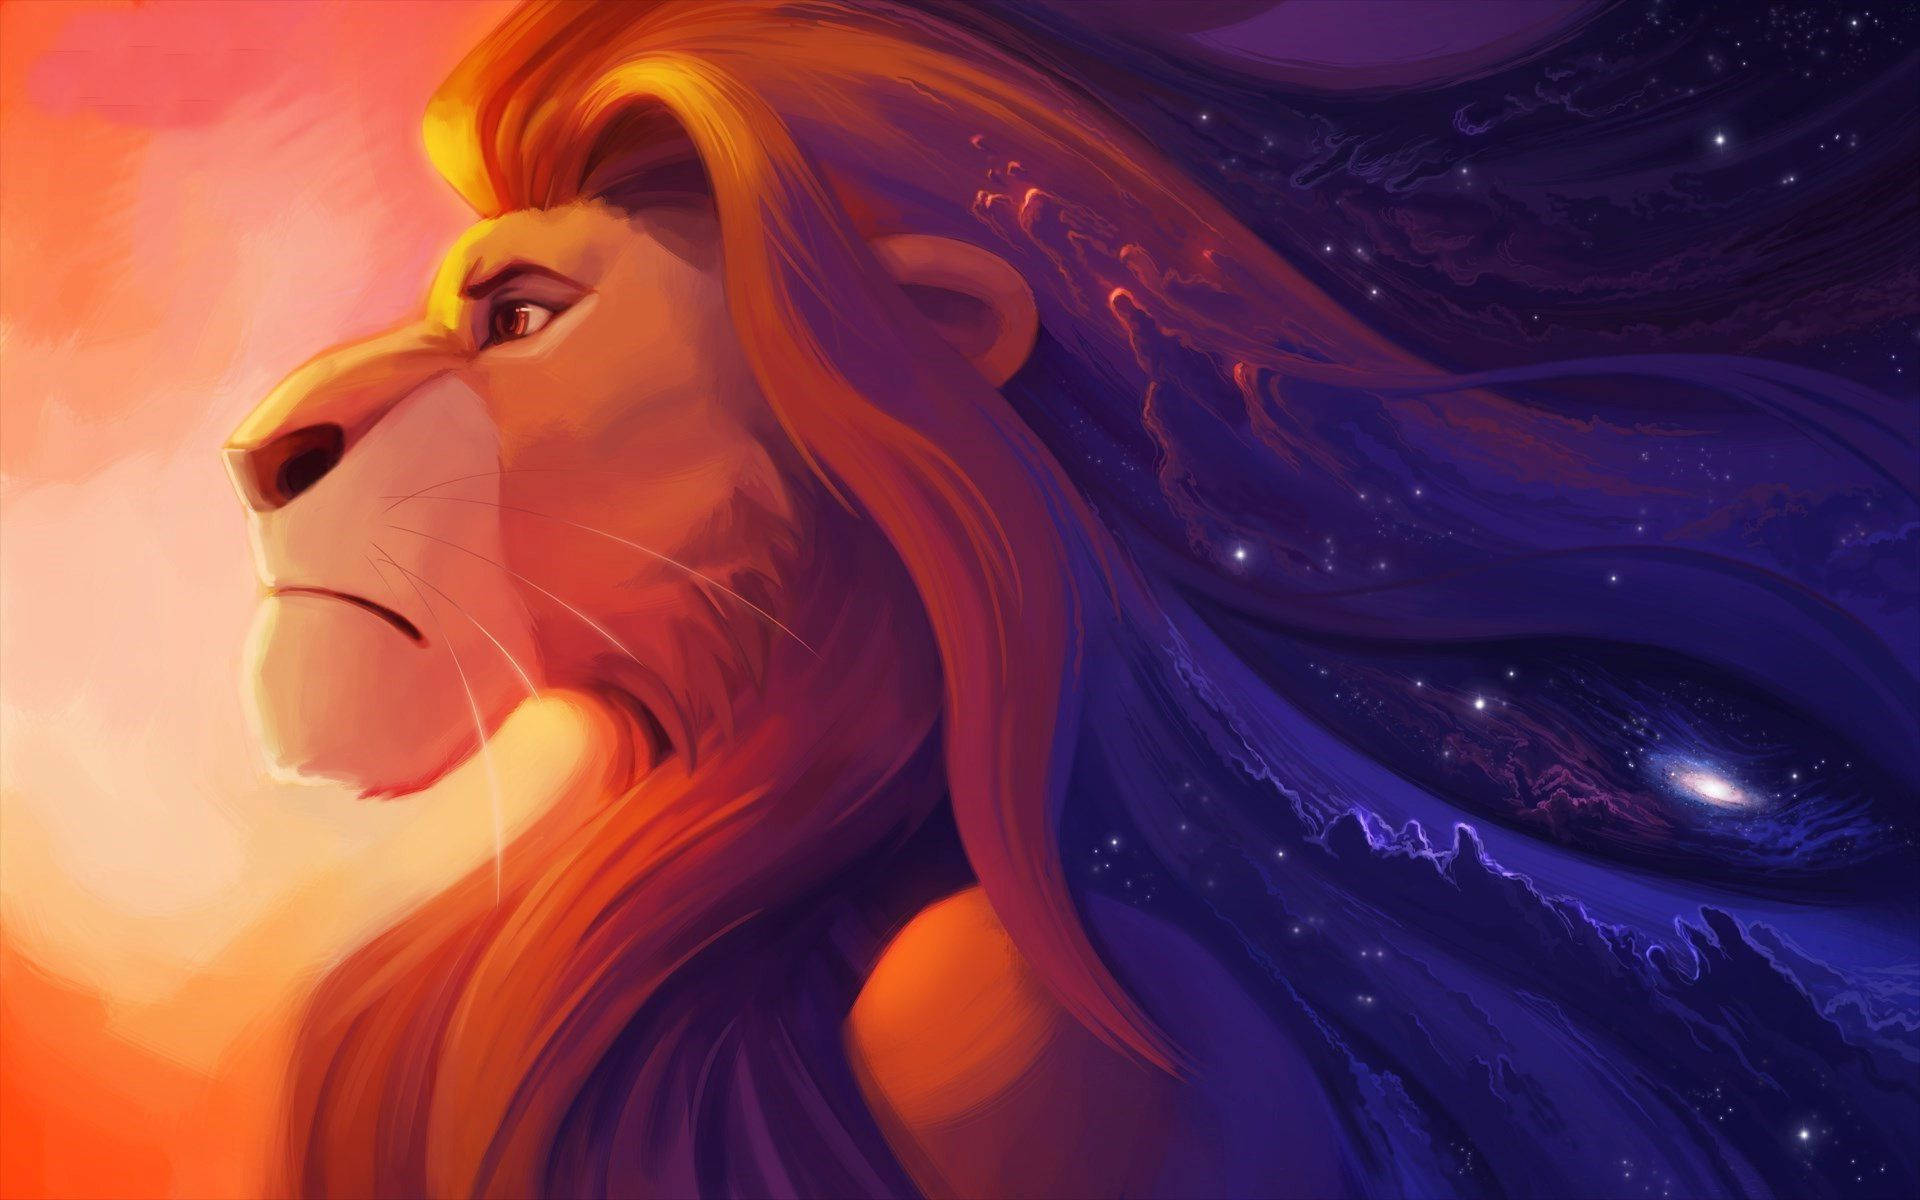 The Lion King Illustration